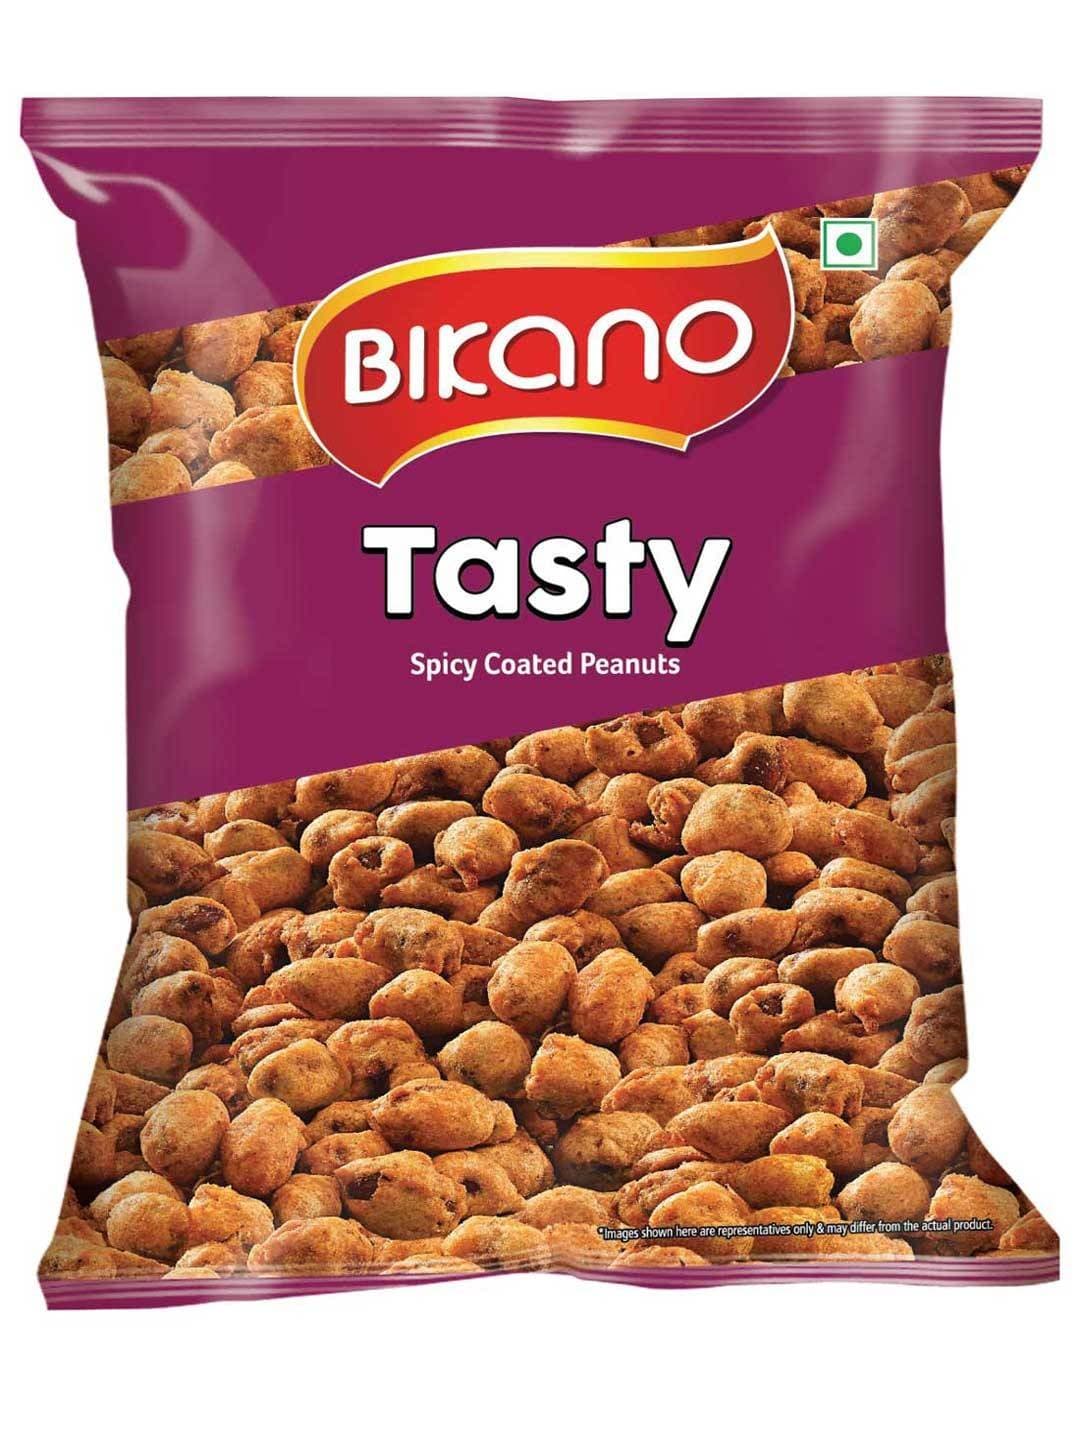 Bikano Tasty Spicy Coated Peanuts